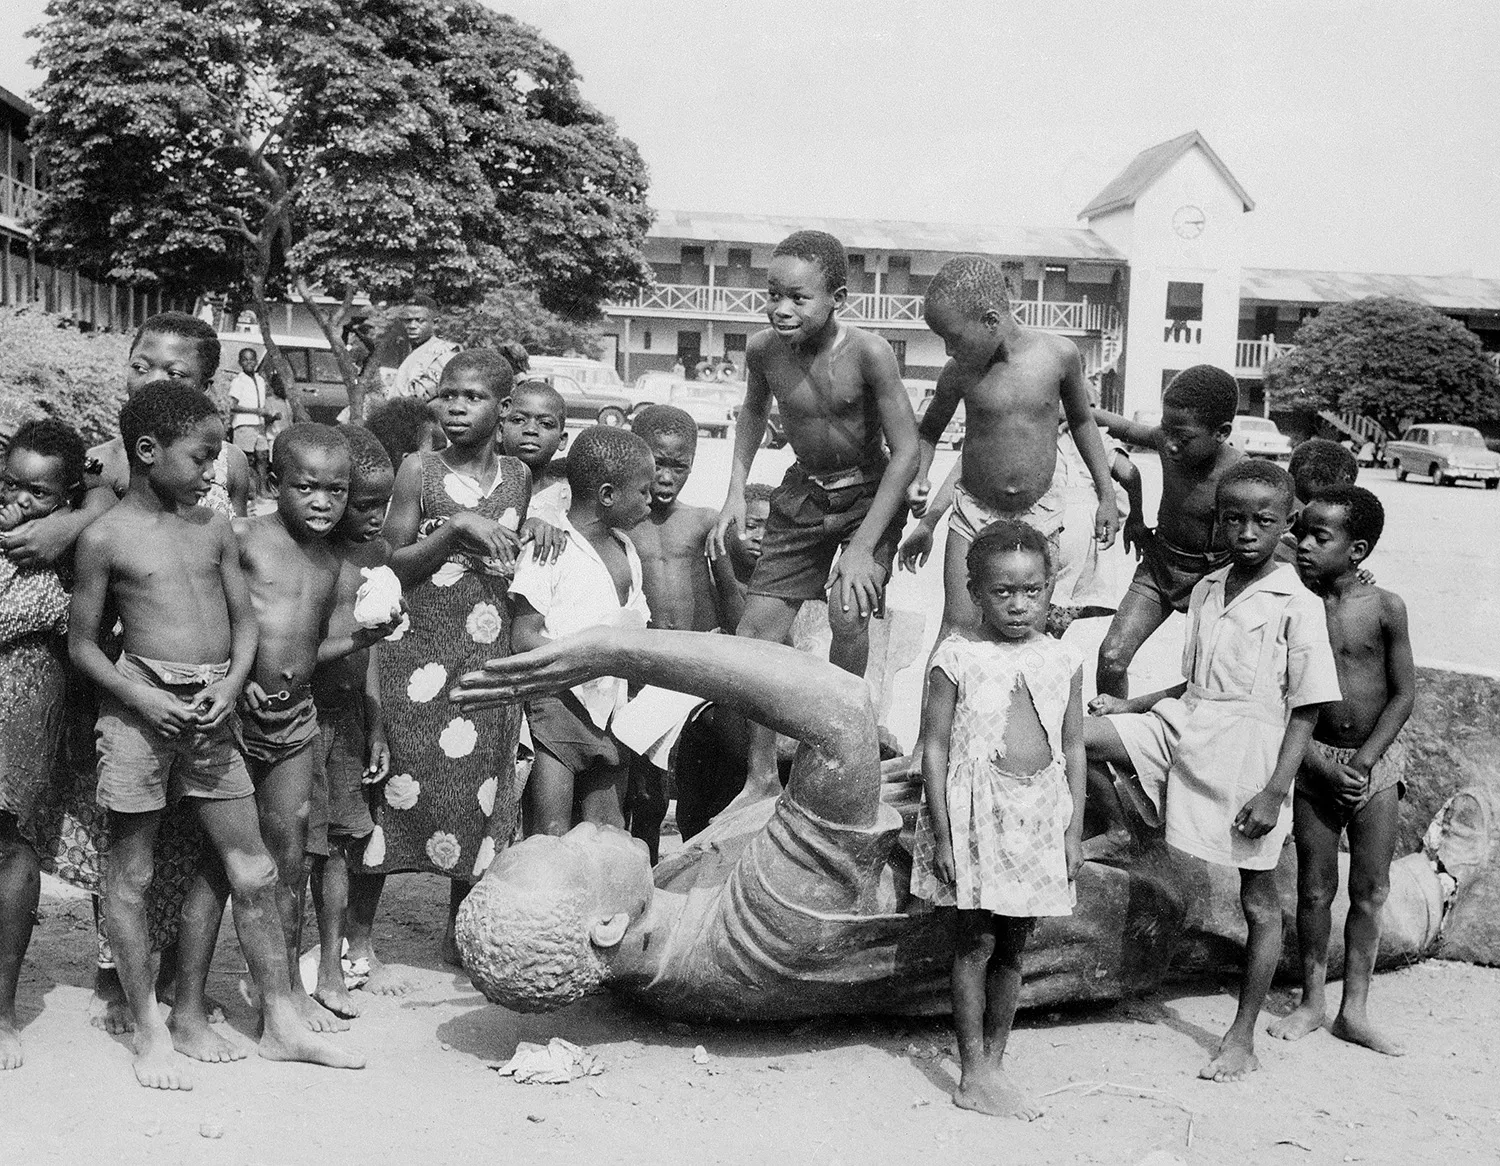 Children play around the fallen statue of Nkrumah in Accra, Ghana.